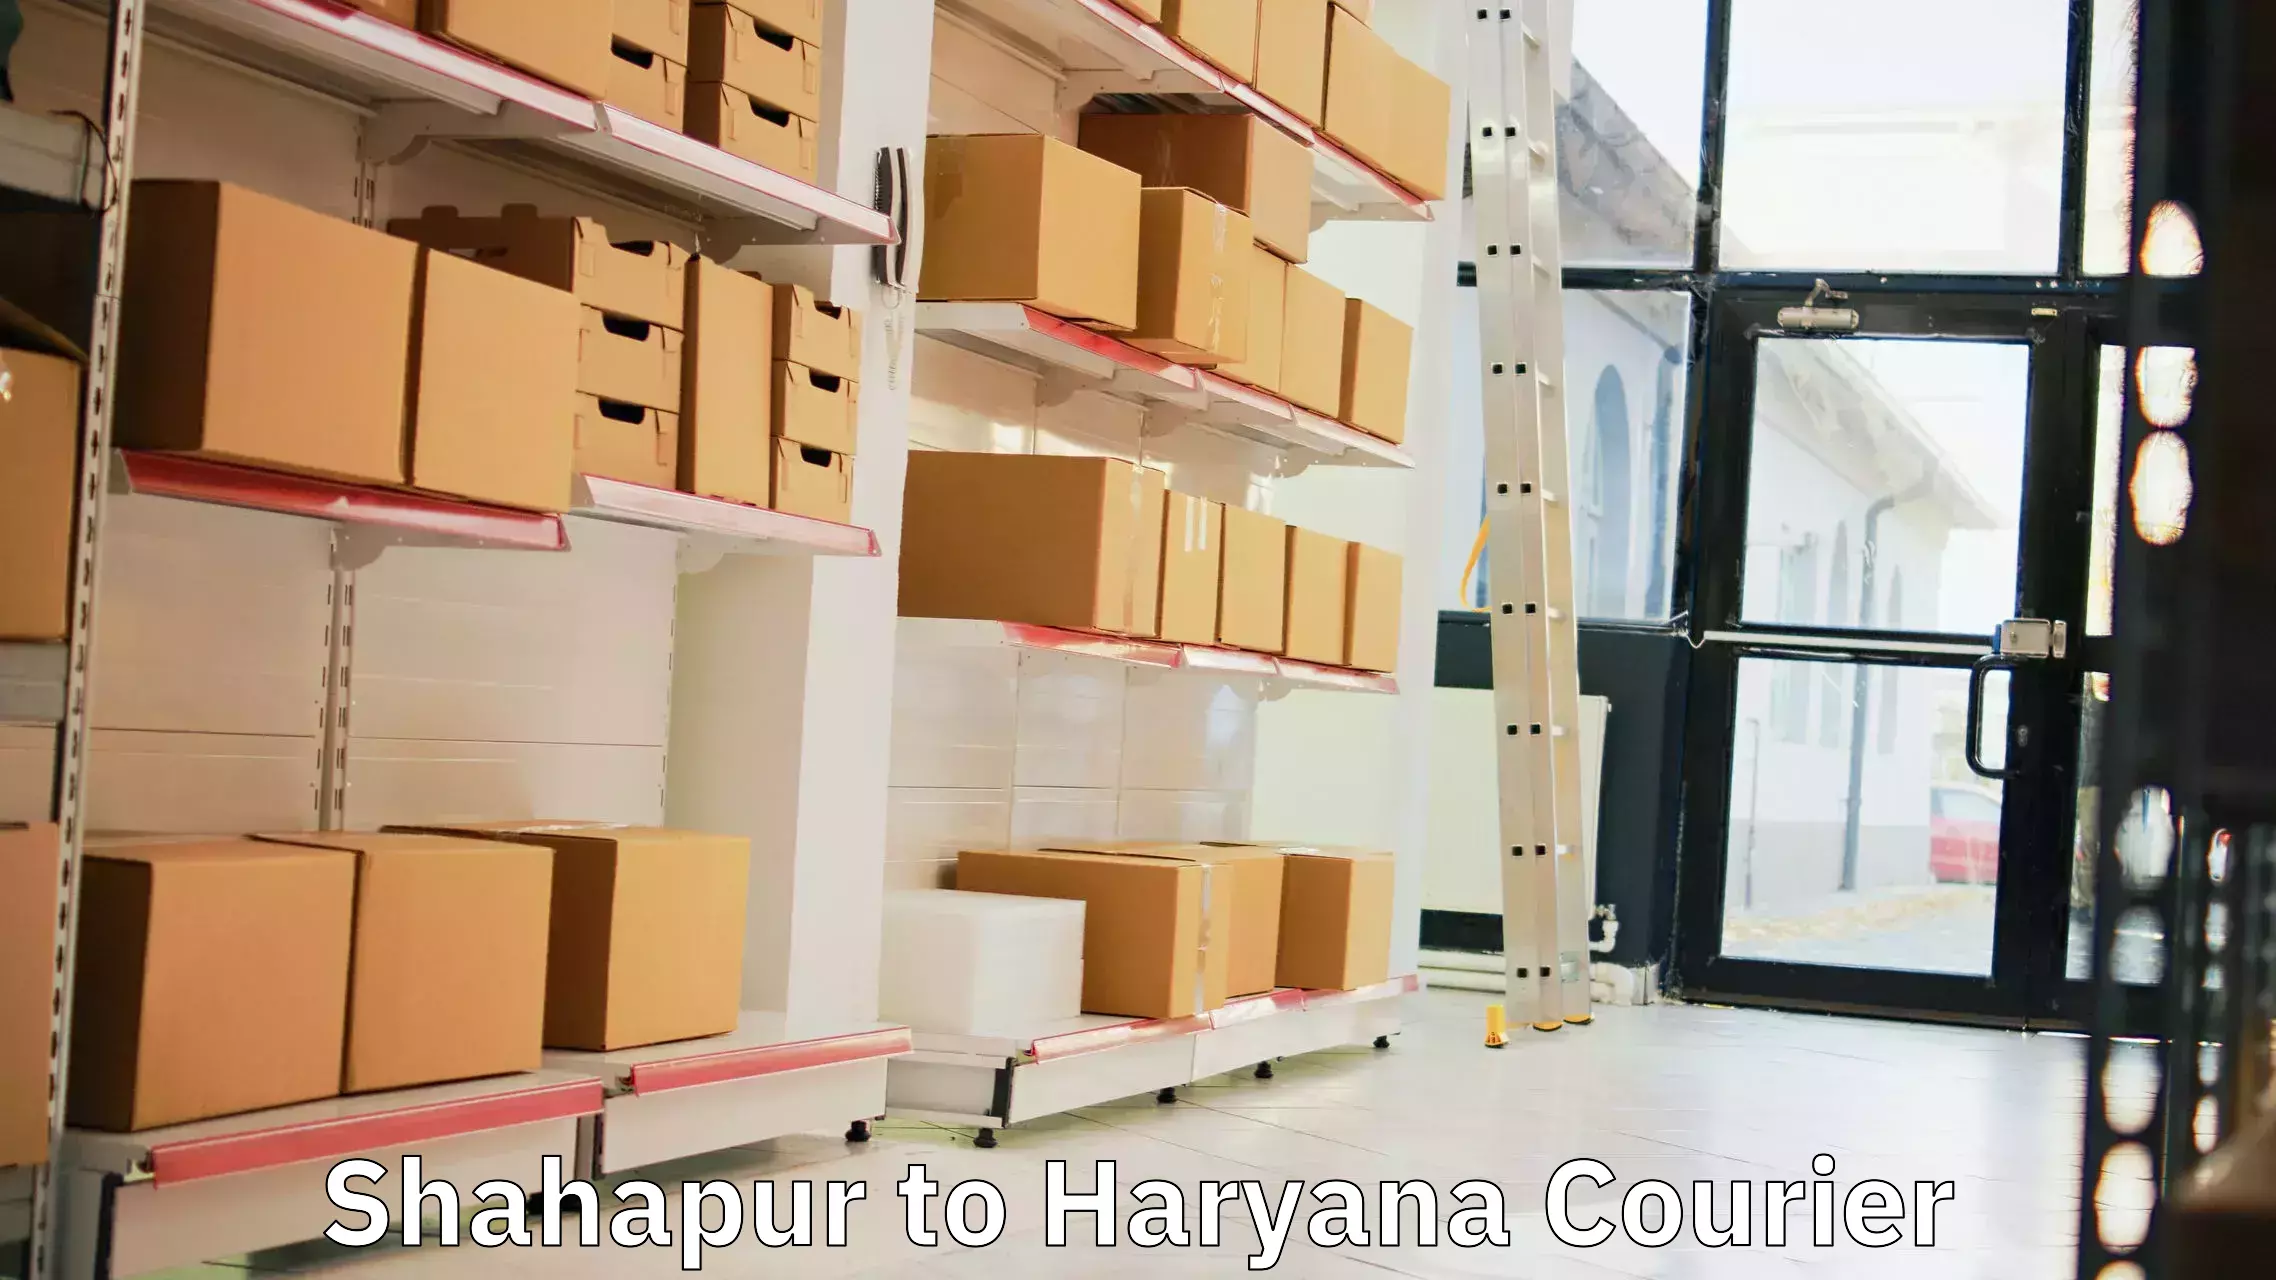 Global logistics network Shahapur to Chirya